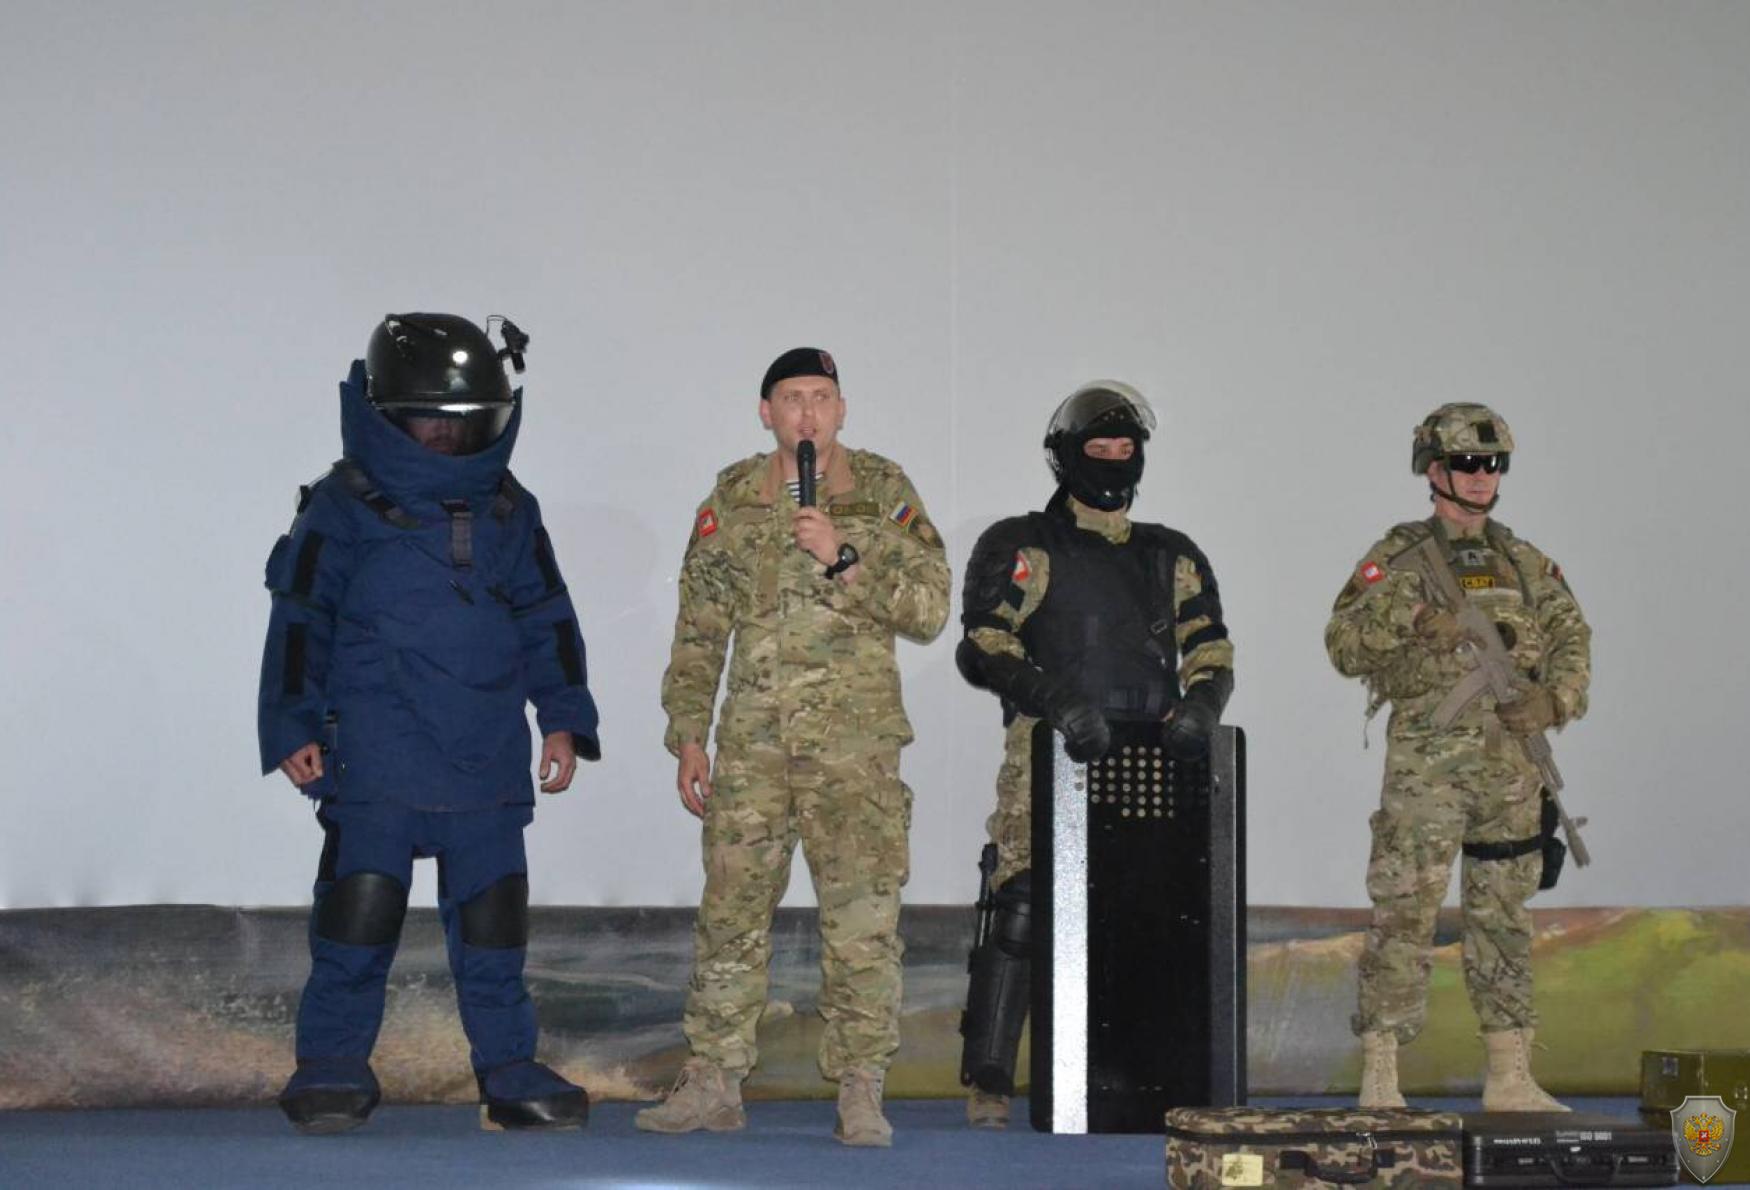 Проведено занятие по комплексной безопасности с учащимися младших классов школ Нахимовского района города Севастополя